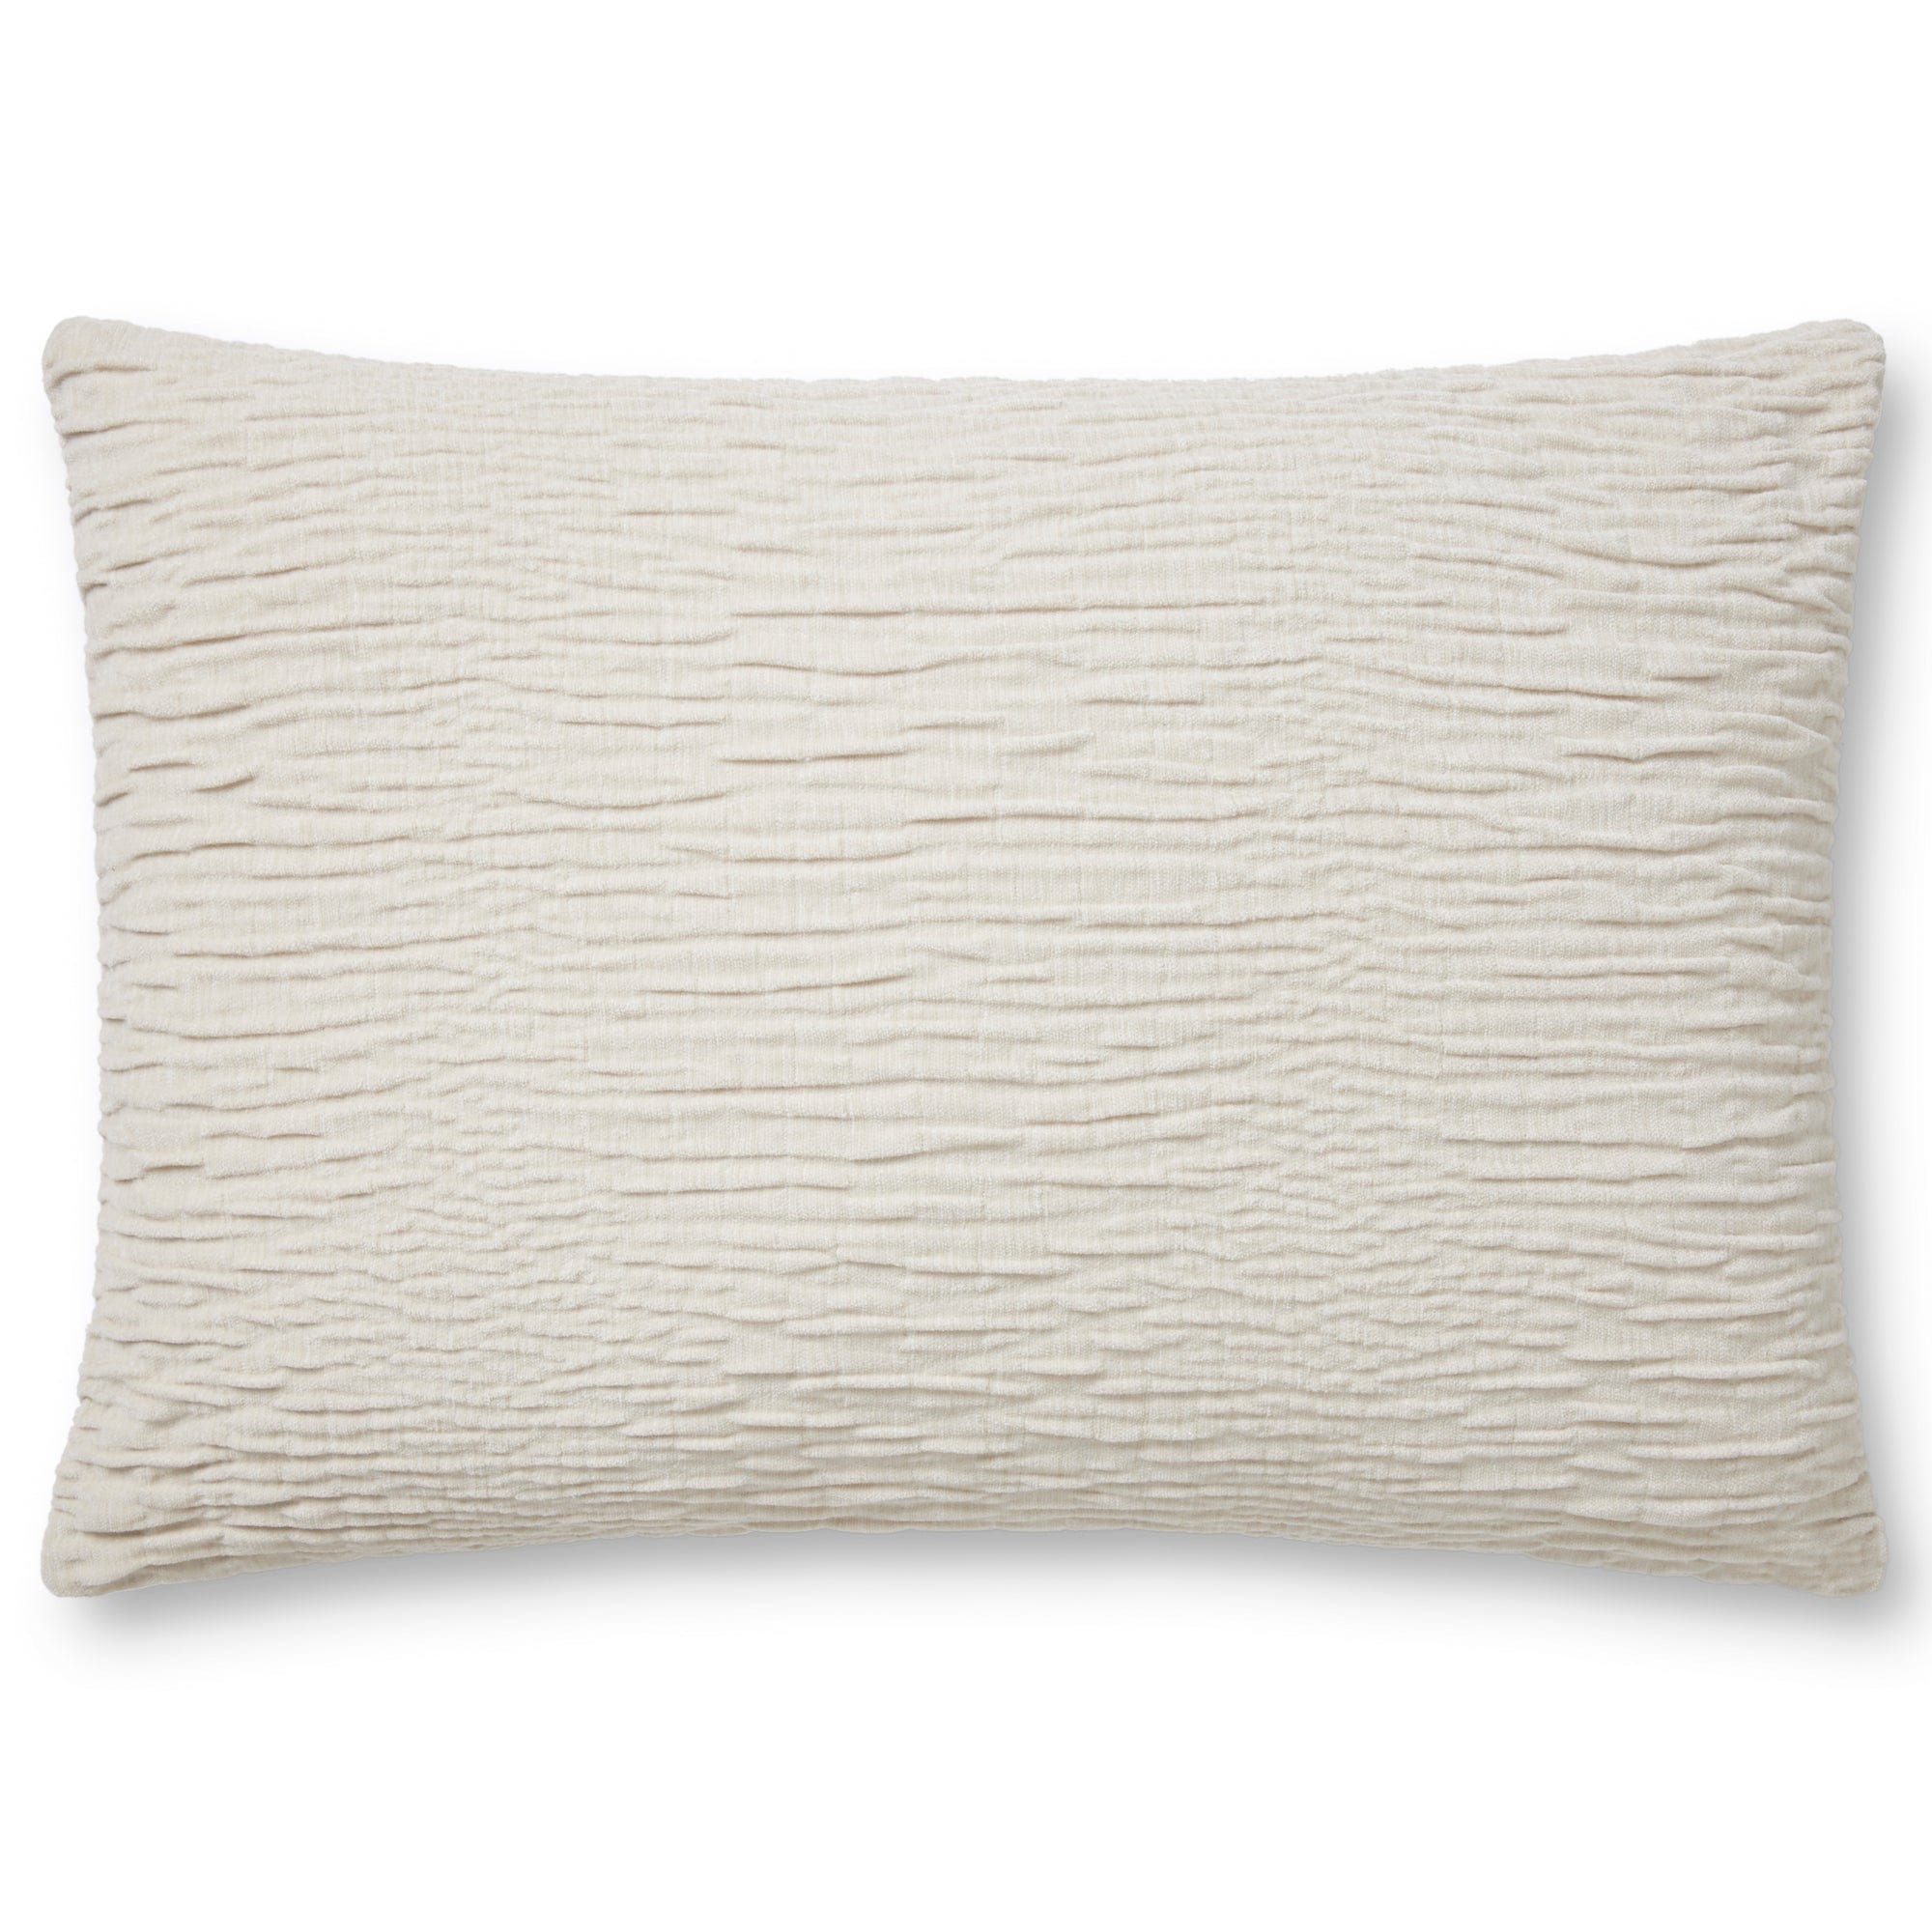 Loloi White 13x35 Rectangular Throw Pillow